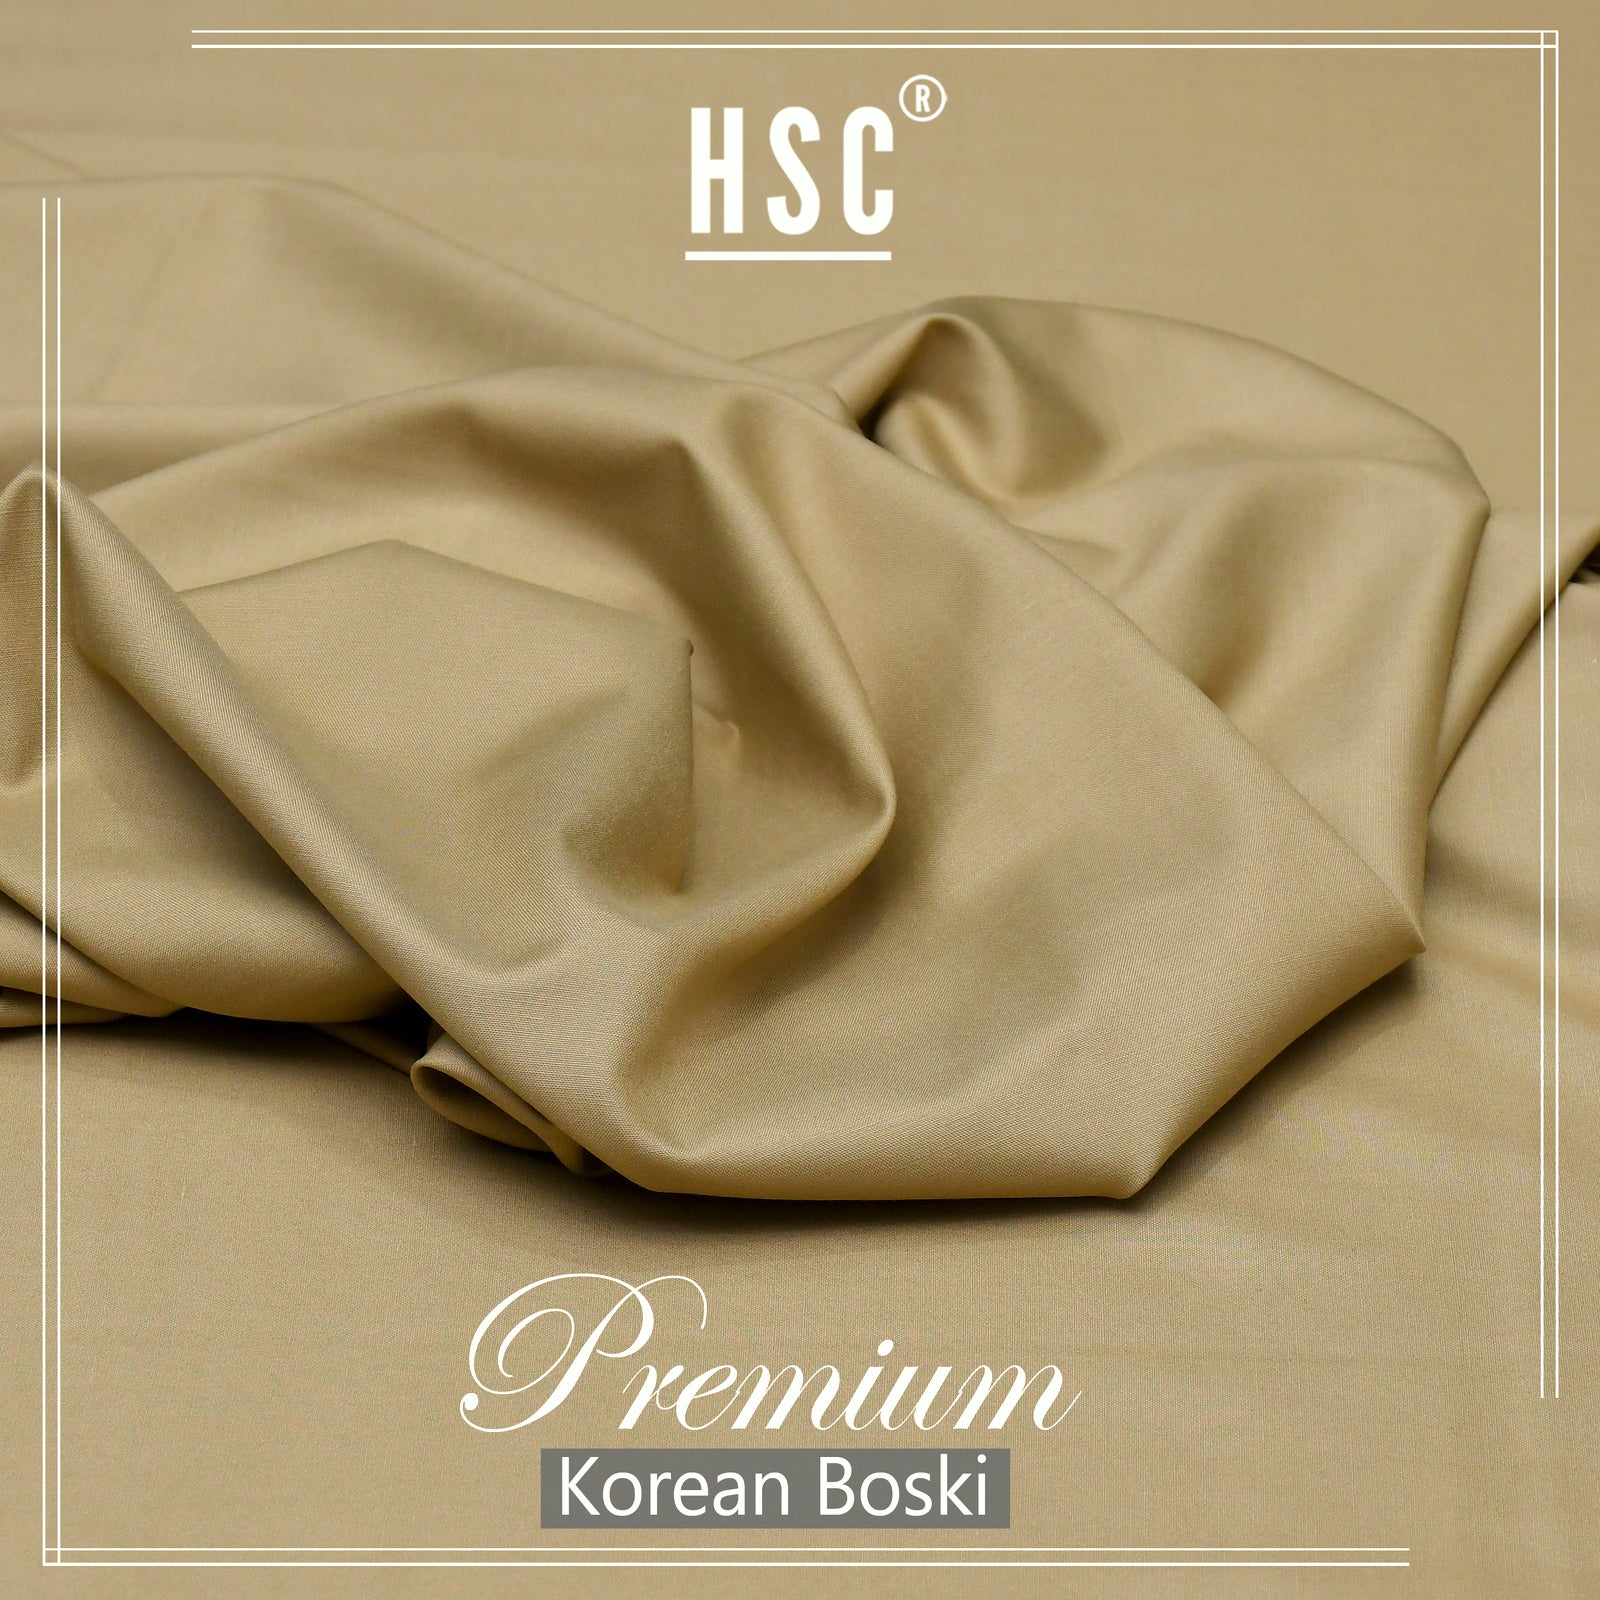 Buy1 Get 1 Free Premium Korean Boski For Men - NPKB14 HSC